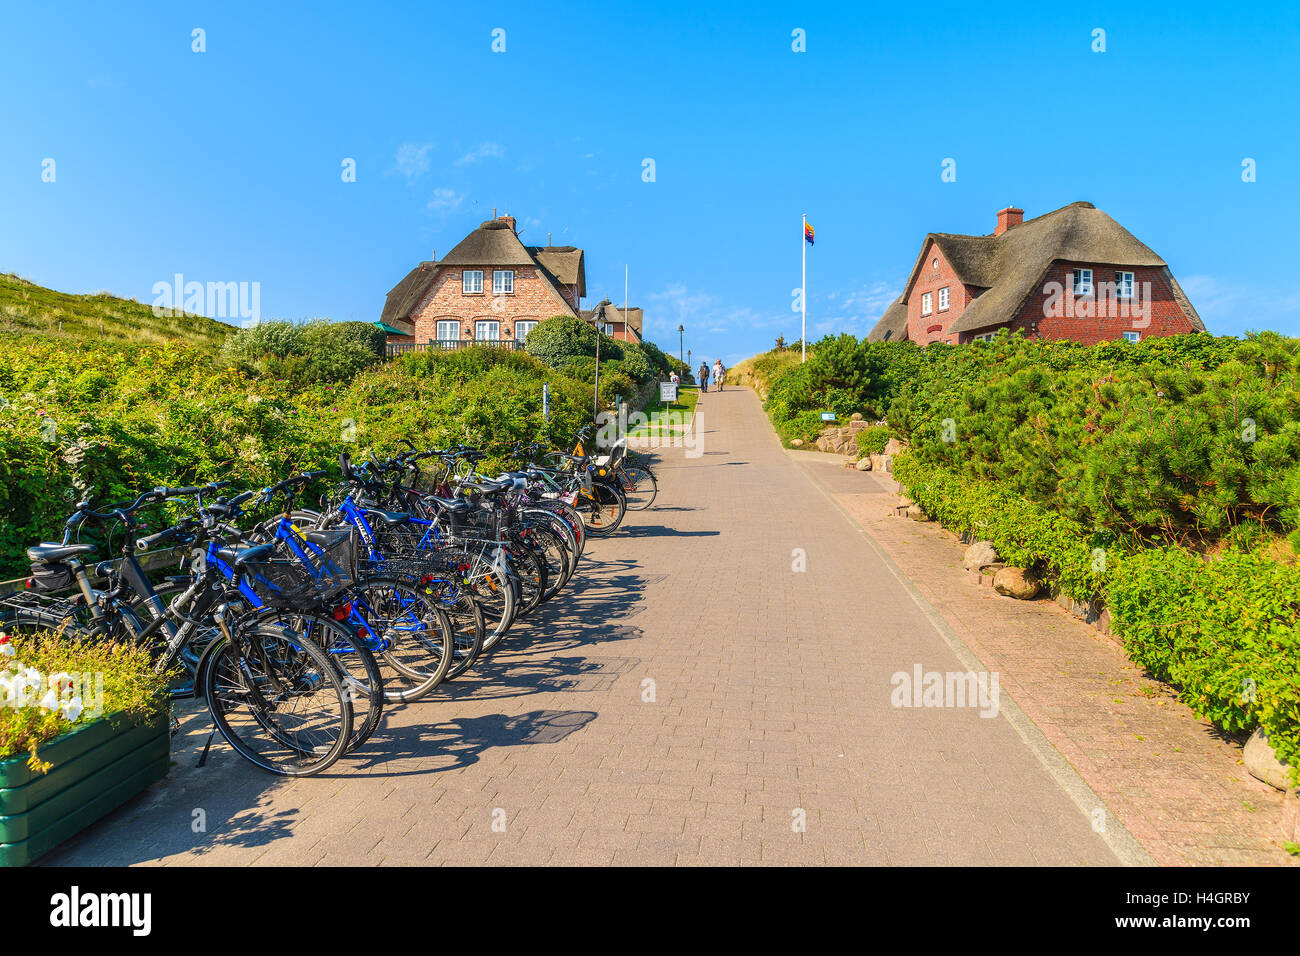 Insel SYLT, Deutschland - SEP 8, 2016: Fahrräder geparkt entlang einer Straße in Rantum Dorf auf der südlichen Küste von Sylt Insel, Deutschland. Stockfoto